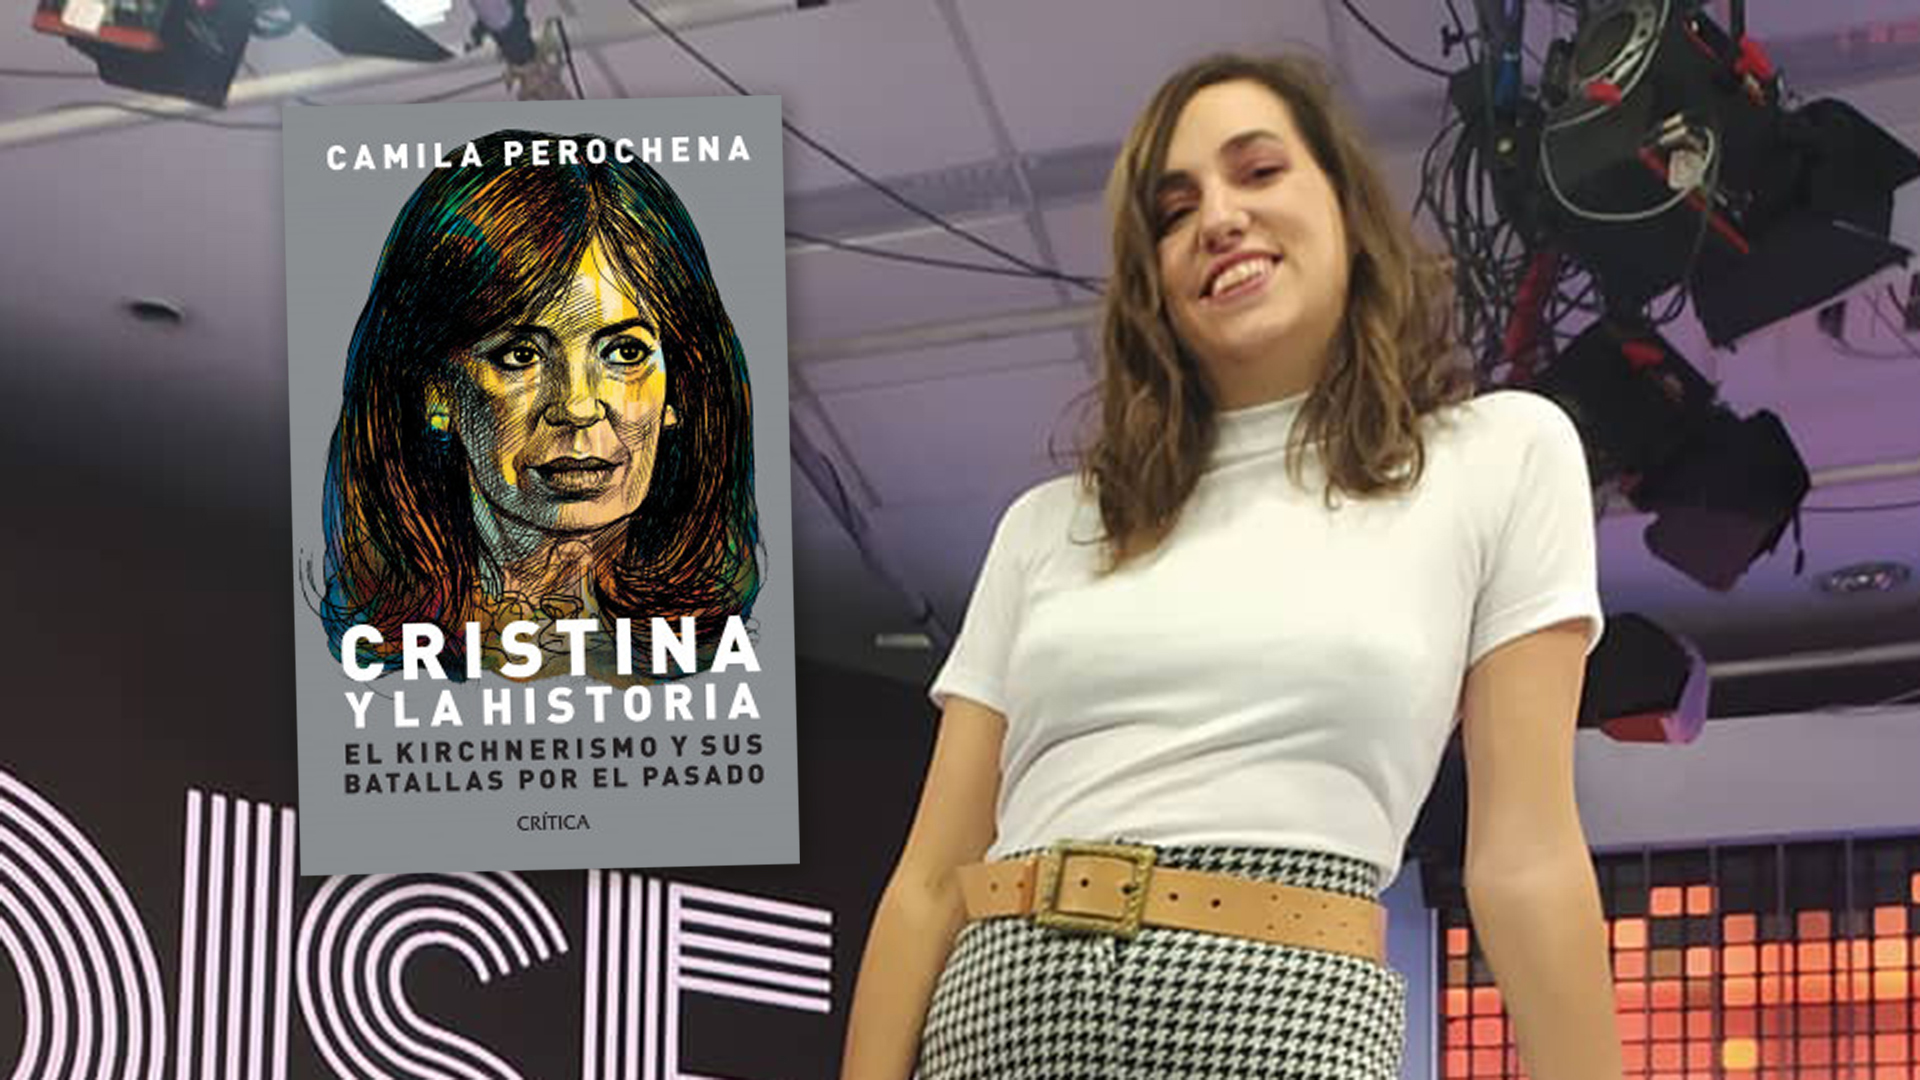 Camila Perochena y su libro "Cristina y la historia" (@camiperochena)